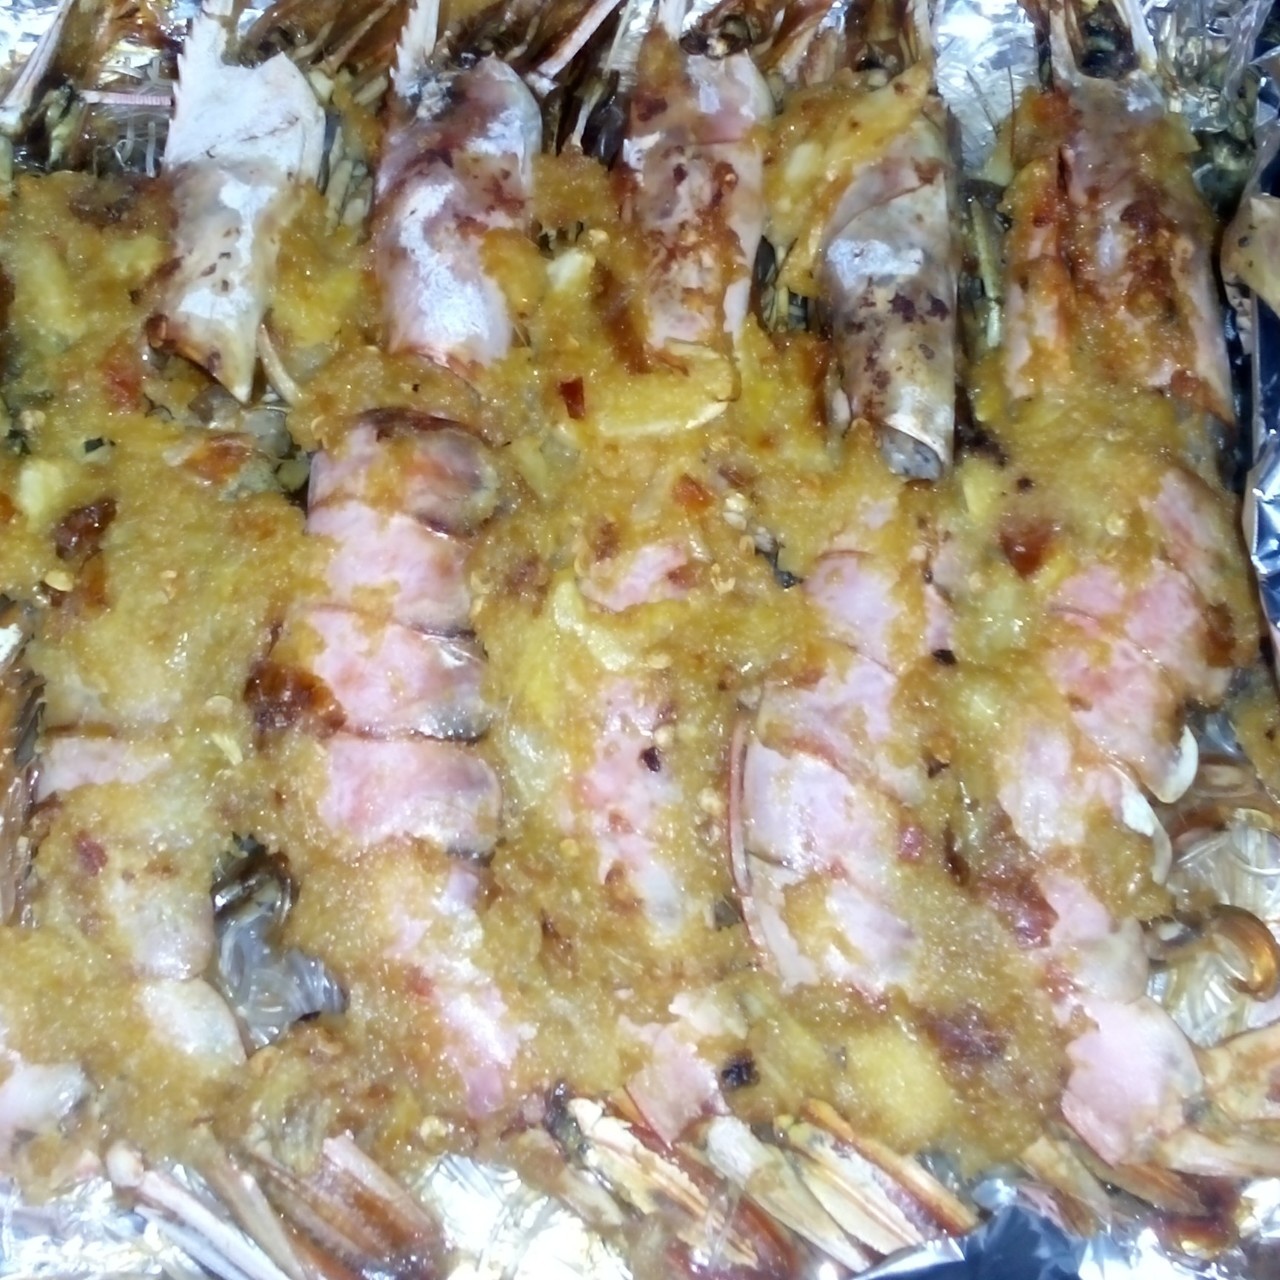 蒜蓉烤虾